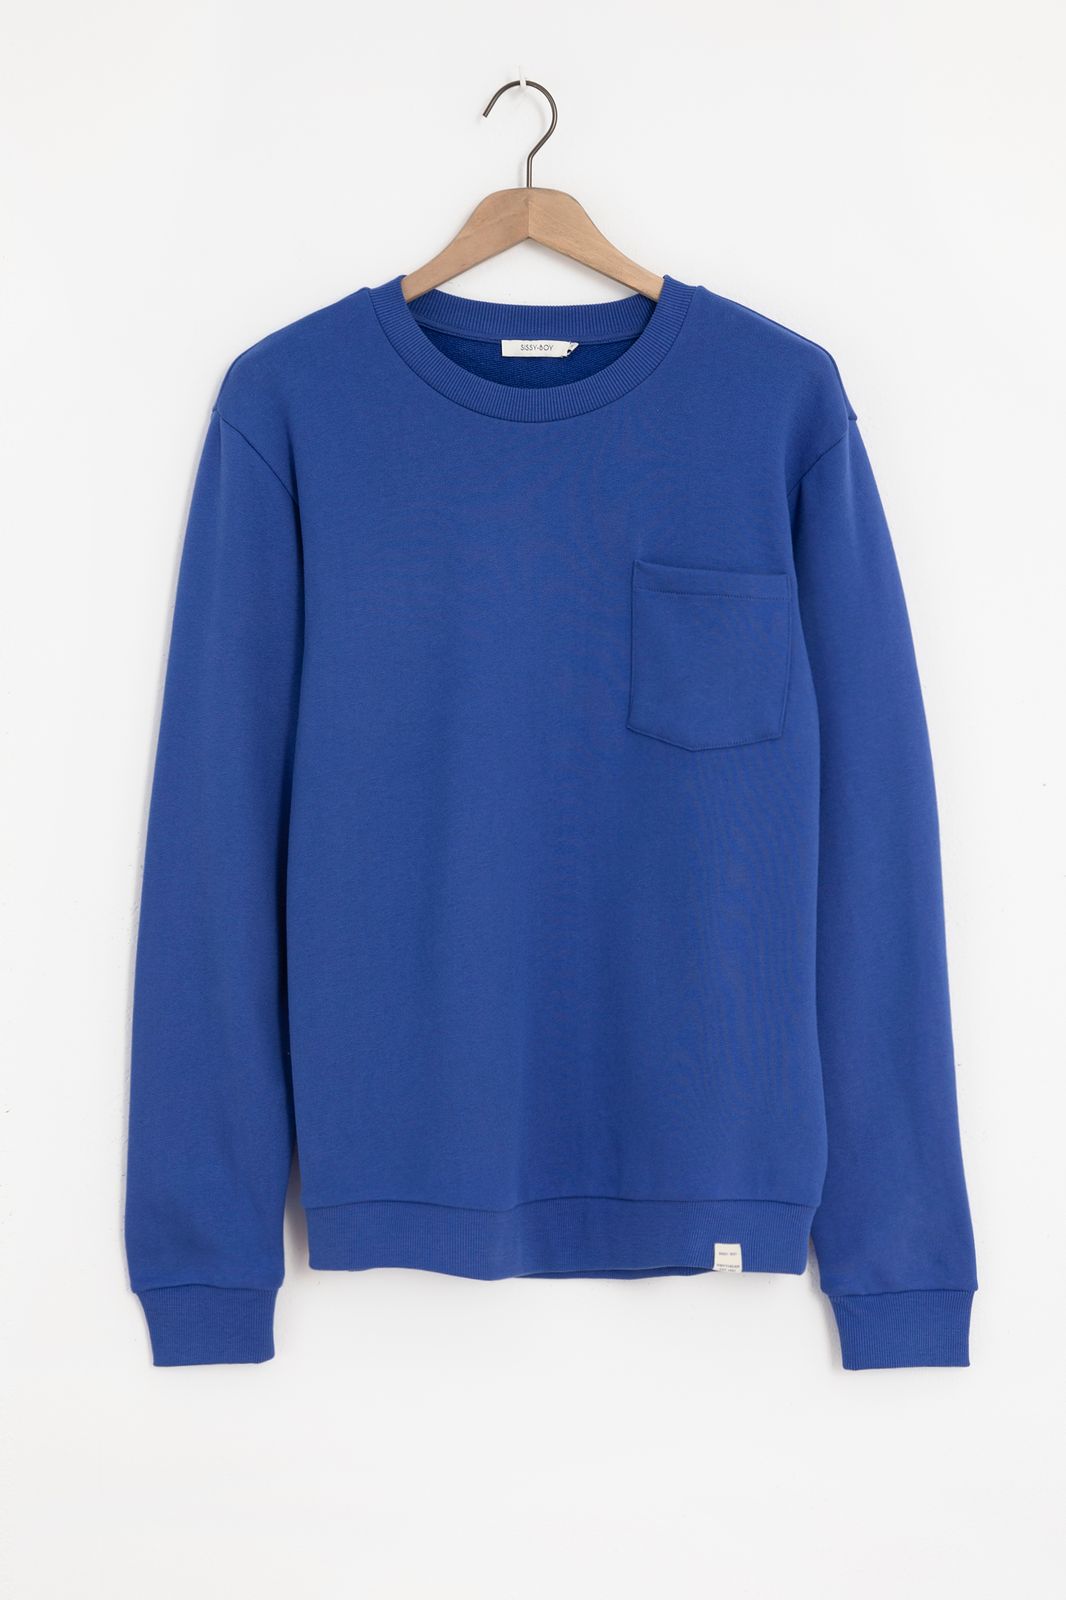 Sweater mit Brusttasche - blau